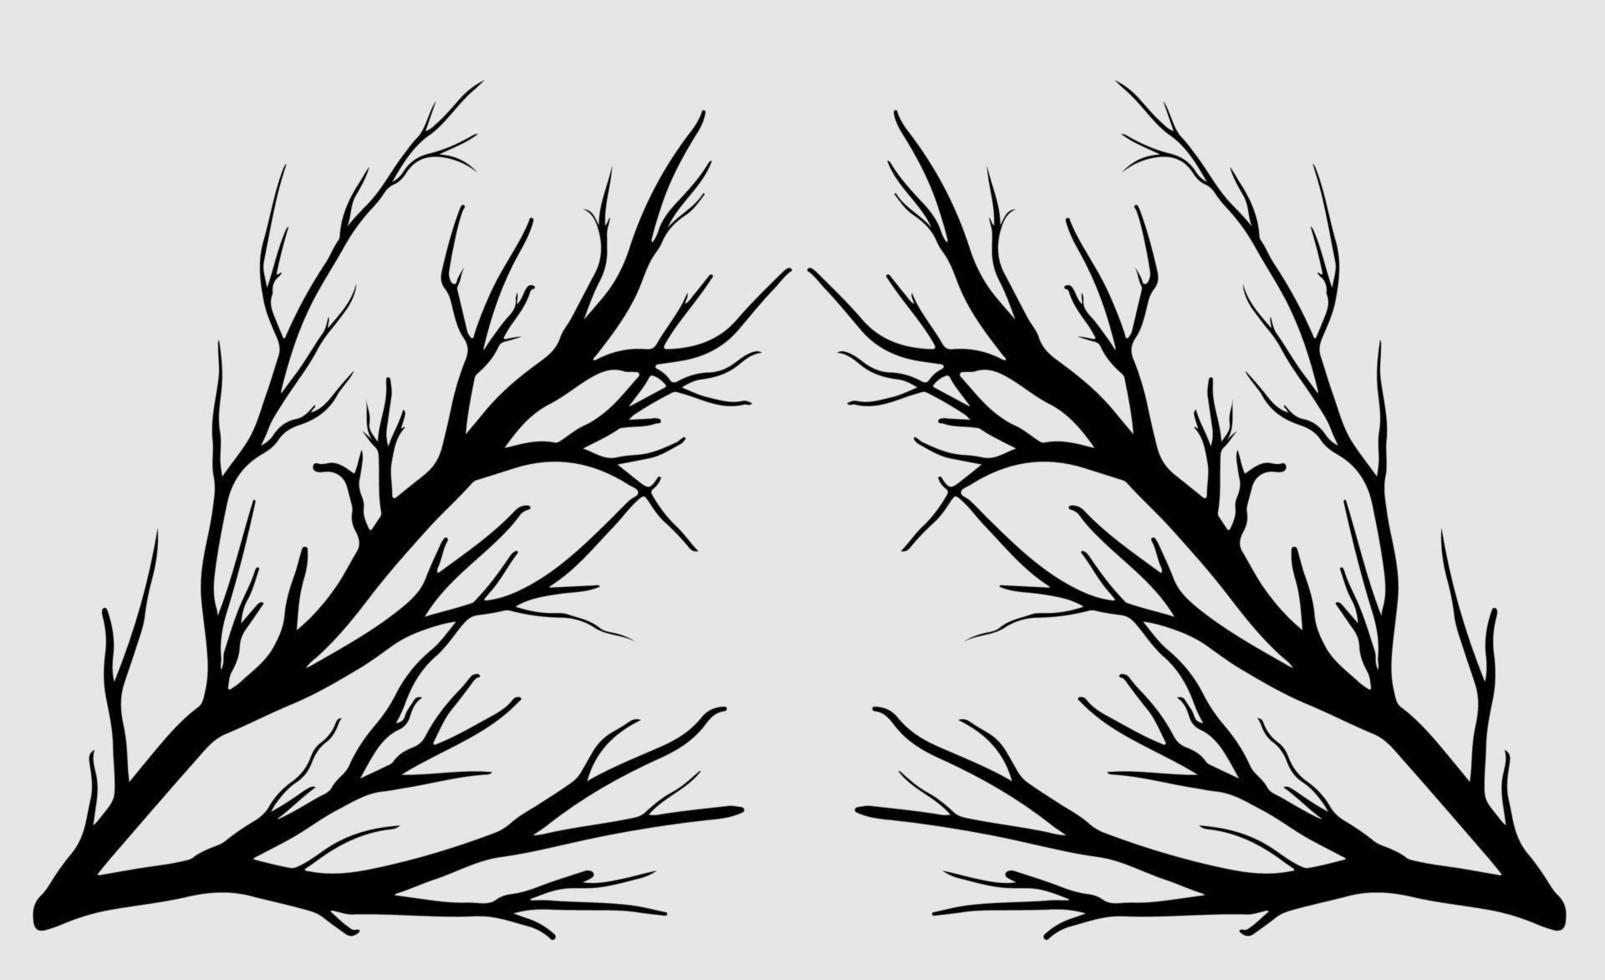 arbre nu silhouette art vecteur conception plante forme nue pour les sites Web, l'impression et autres.